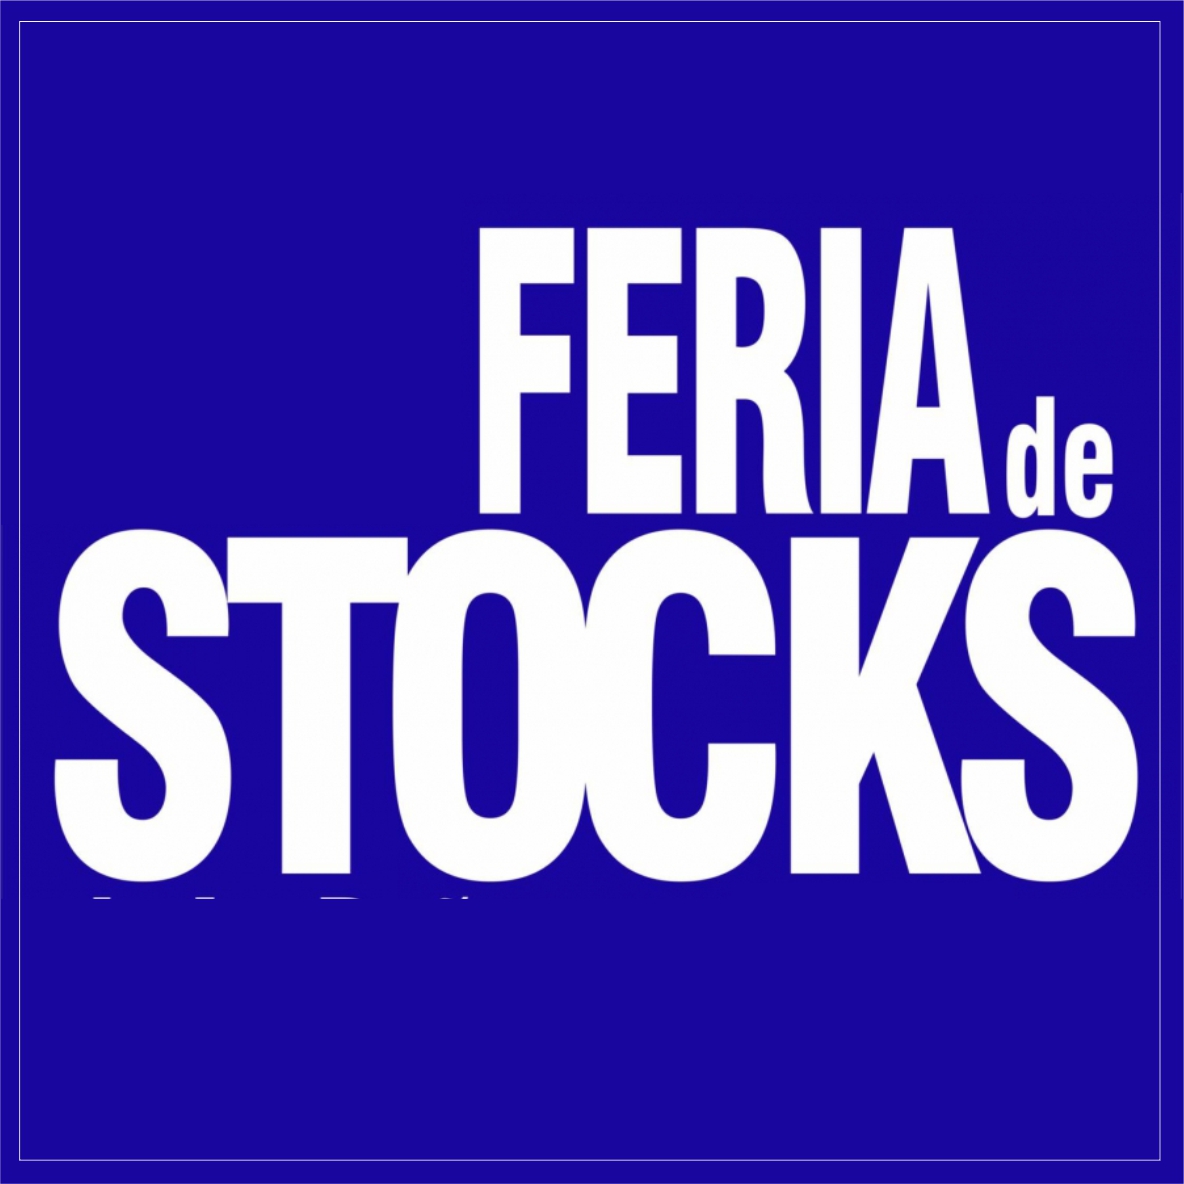 Feria de Stocks